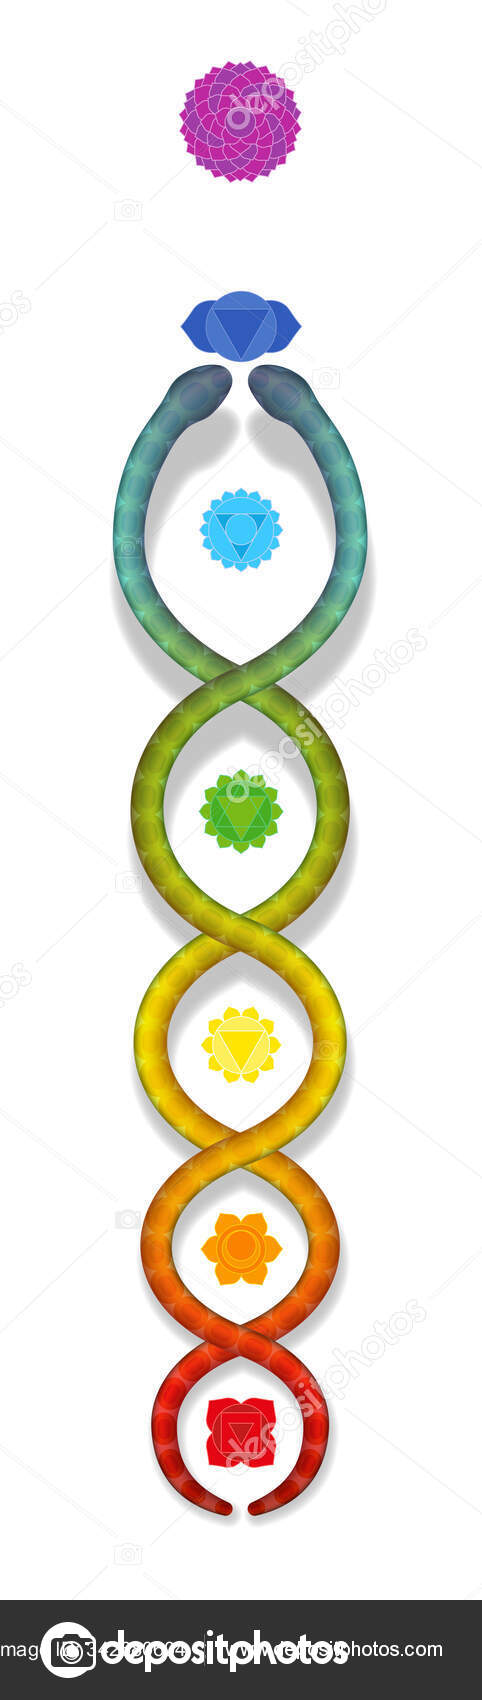 Kundalini serpente ascendente ao longo dos sete chakras principais. Símbolo  de poder e equilíbrio espiritual, despertar, harmonia e relaxamento.  Ilustração vetorial sobre branco . imagem vetorial de Furian© 342680604